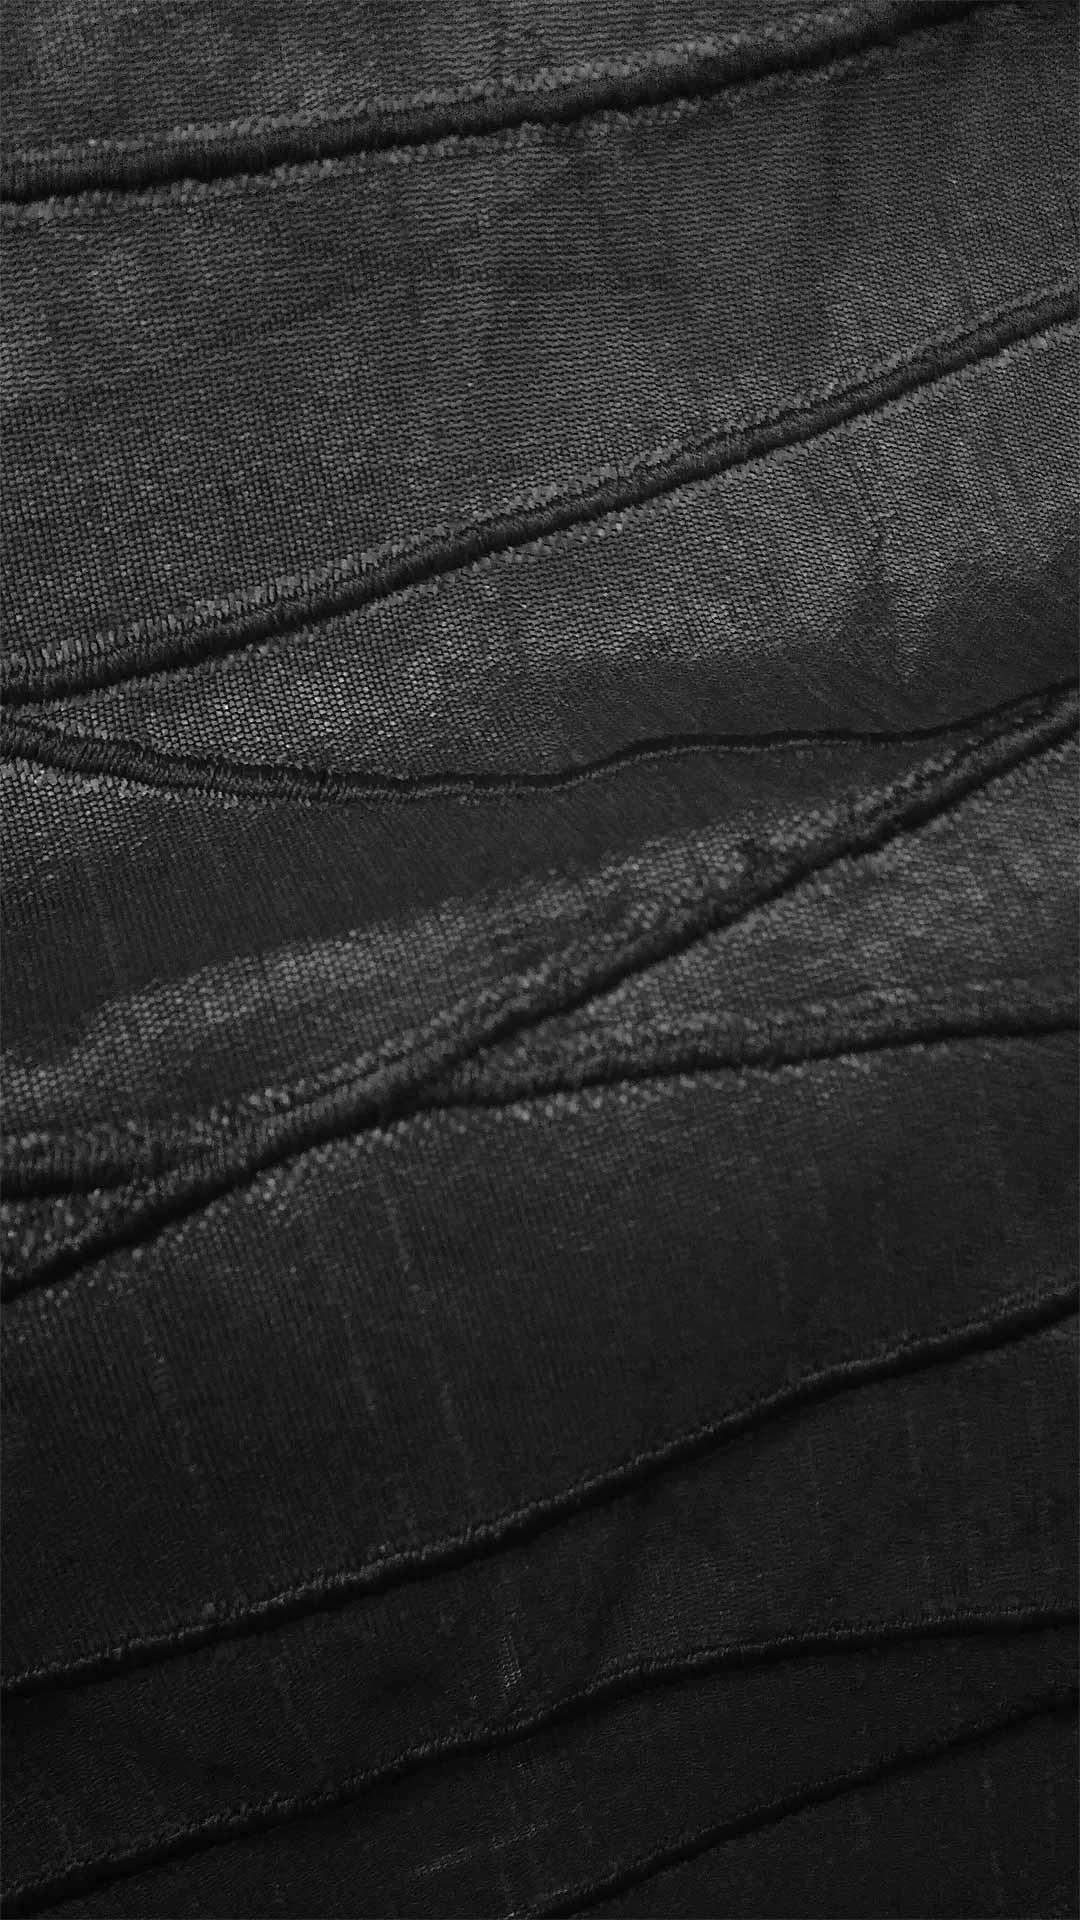 texture dark photo background